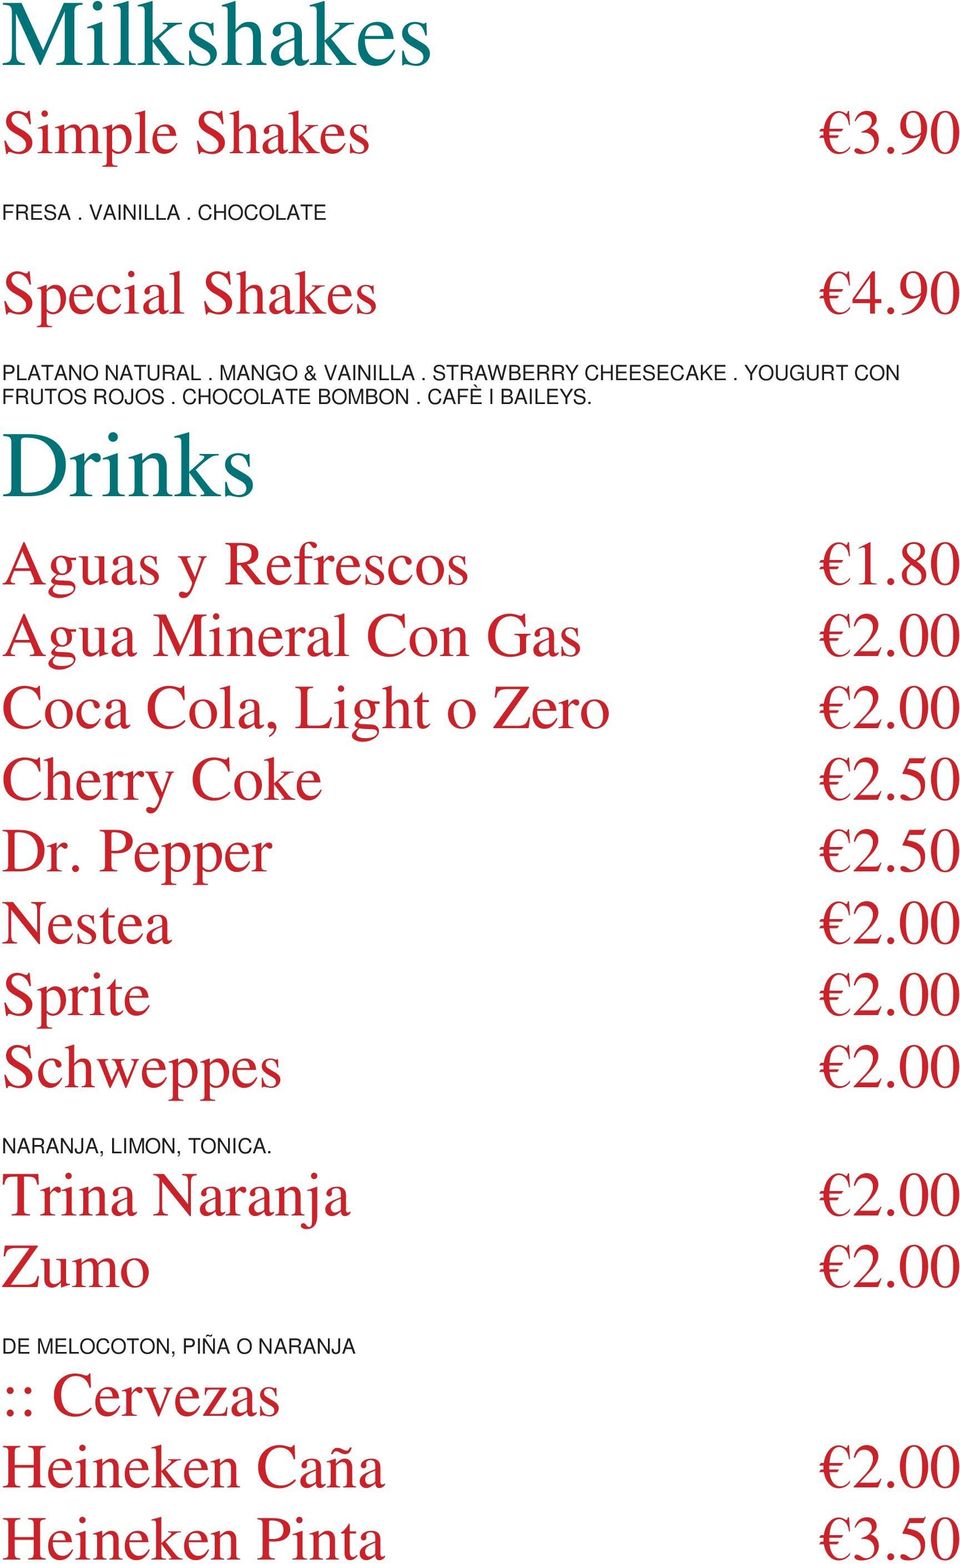 80 Agua Mineral Con Gas 2.00 Coca Cola, Light o Zero 2.00 Cherry Coke 2.50 Dr. Pepper 2.50 Nestea 2.00 Sprite 2.